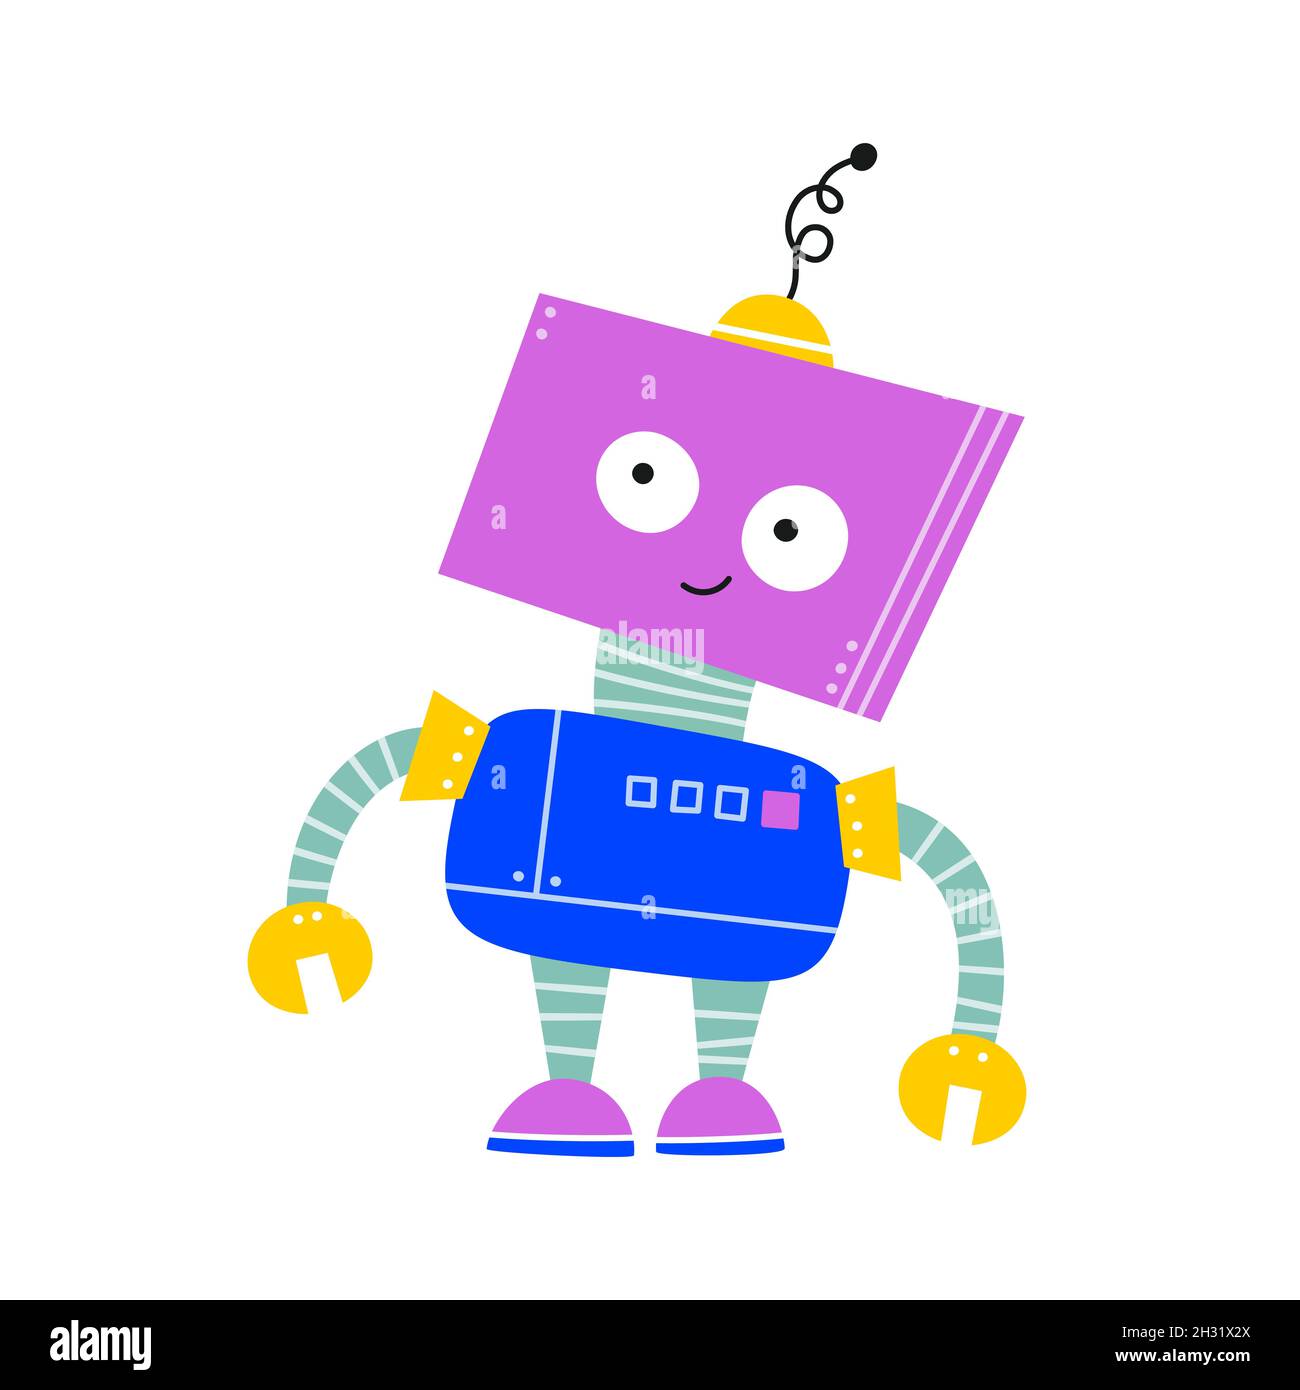 Glücklich lustige Cartoon kindische Roboter Charakter. Bunte Kinder Roboter  mit nachdenklichen Gesicht. Flache Vektorgrafik isoliert auf weißem  Hintergrund Stock-Vektorgrafik - Alamy